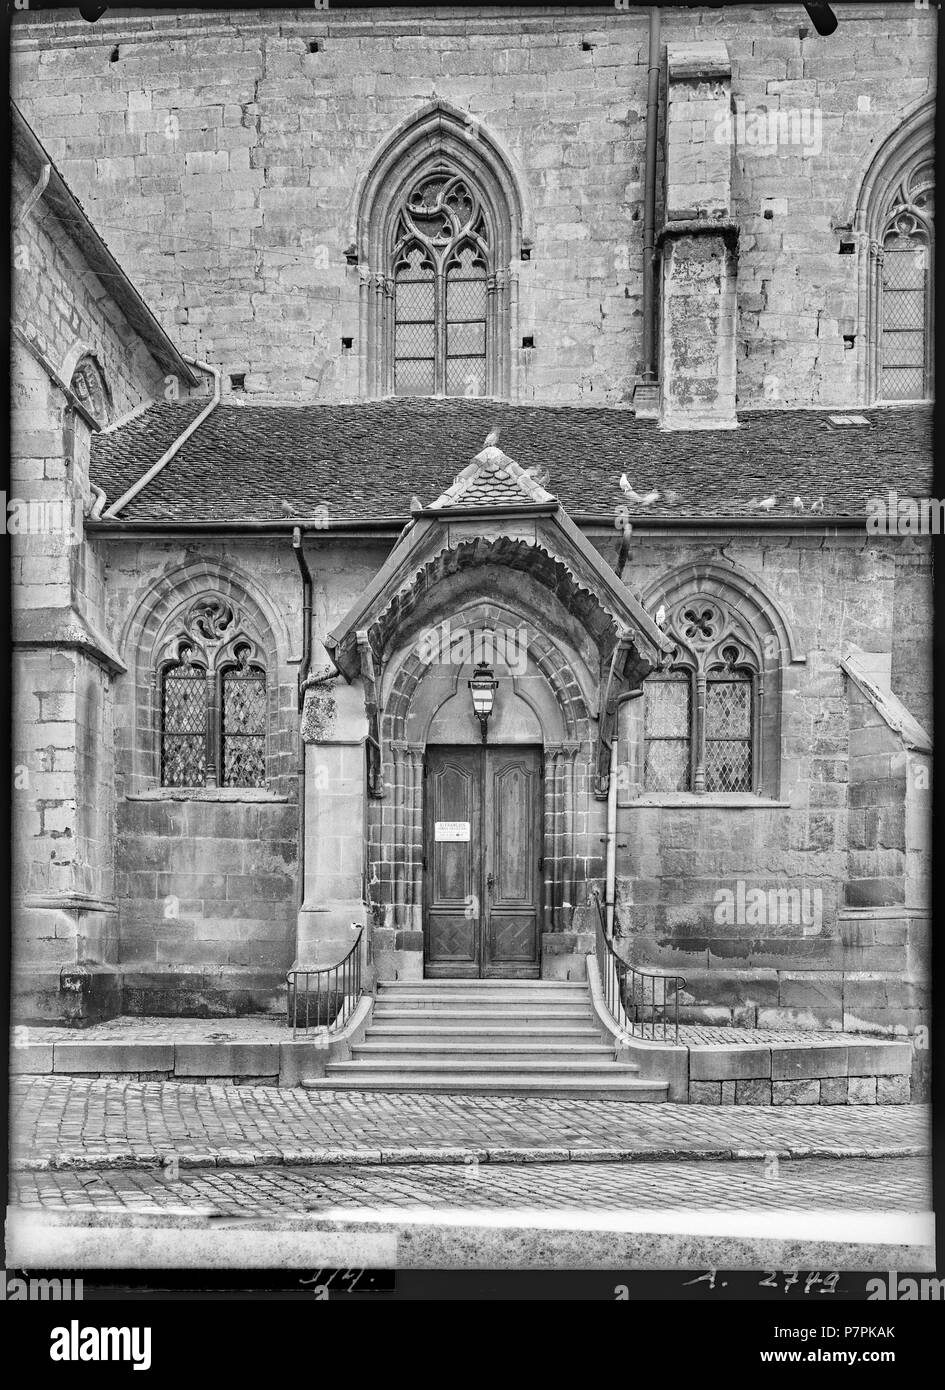 74 CH-NB - Lausanne, Église réformée Saint-François, vue partielle extérieure - Collection Max van Berchem - EAD-7314 Stock Photo